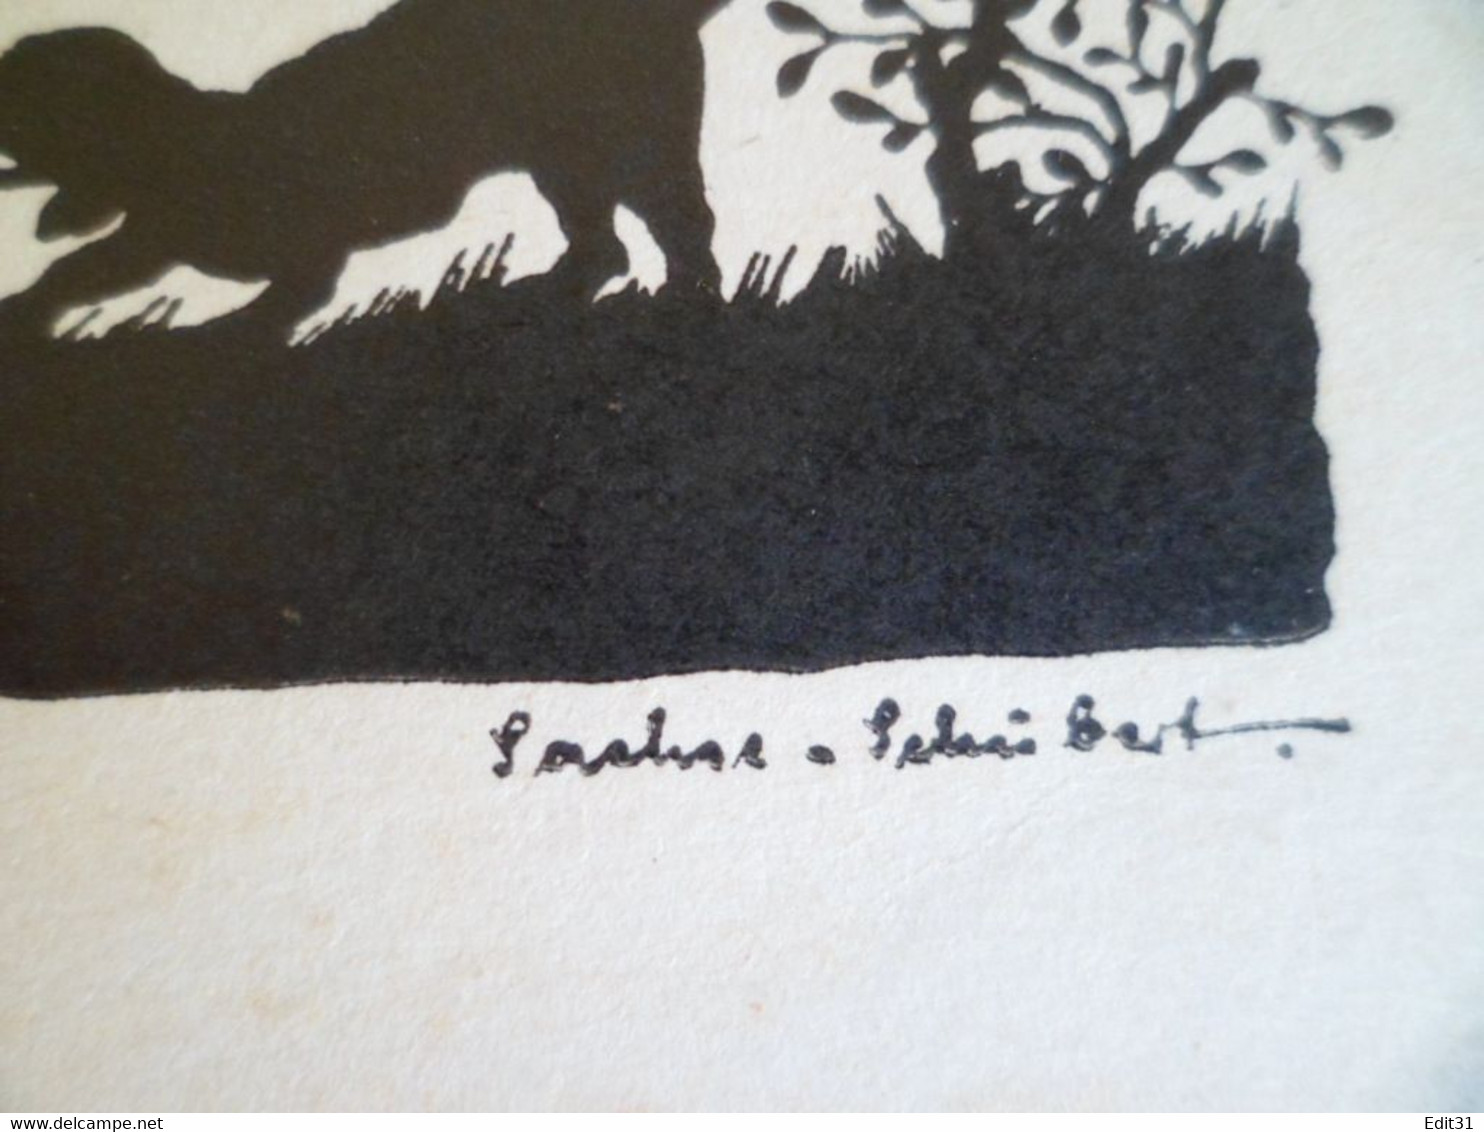 Scherenschnitt 1943, Artist Sachse Schubert, Handgeschriebene Karte, Spielgefährten - Papier Découpé - Schubert